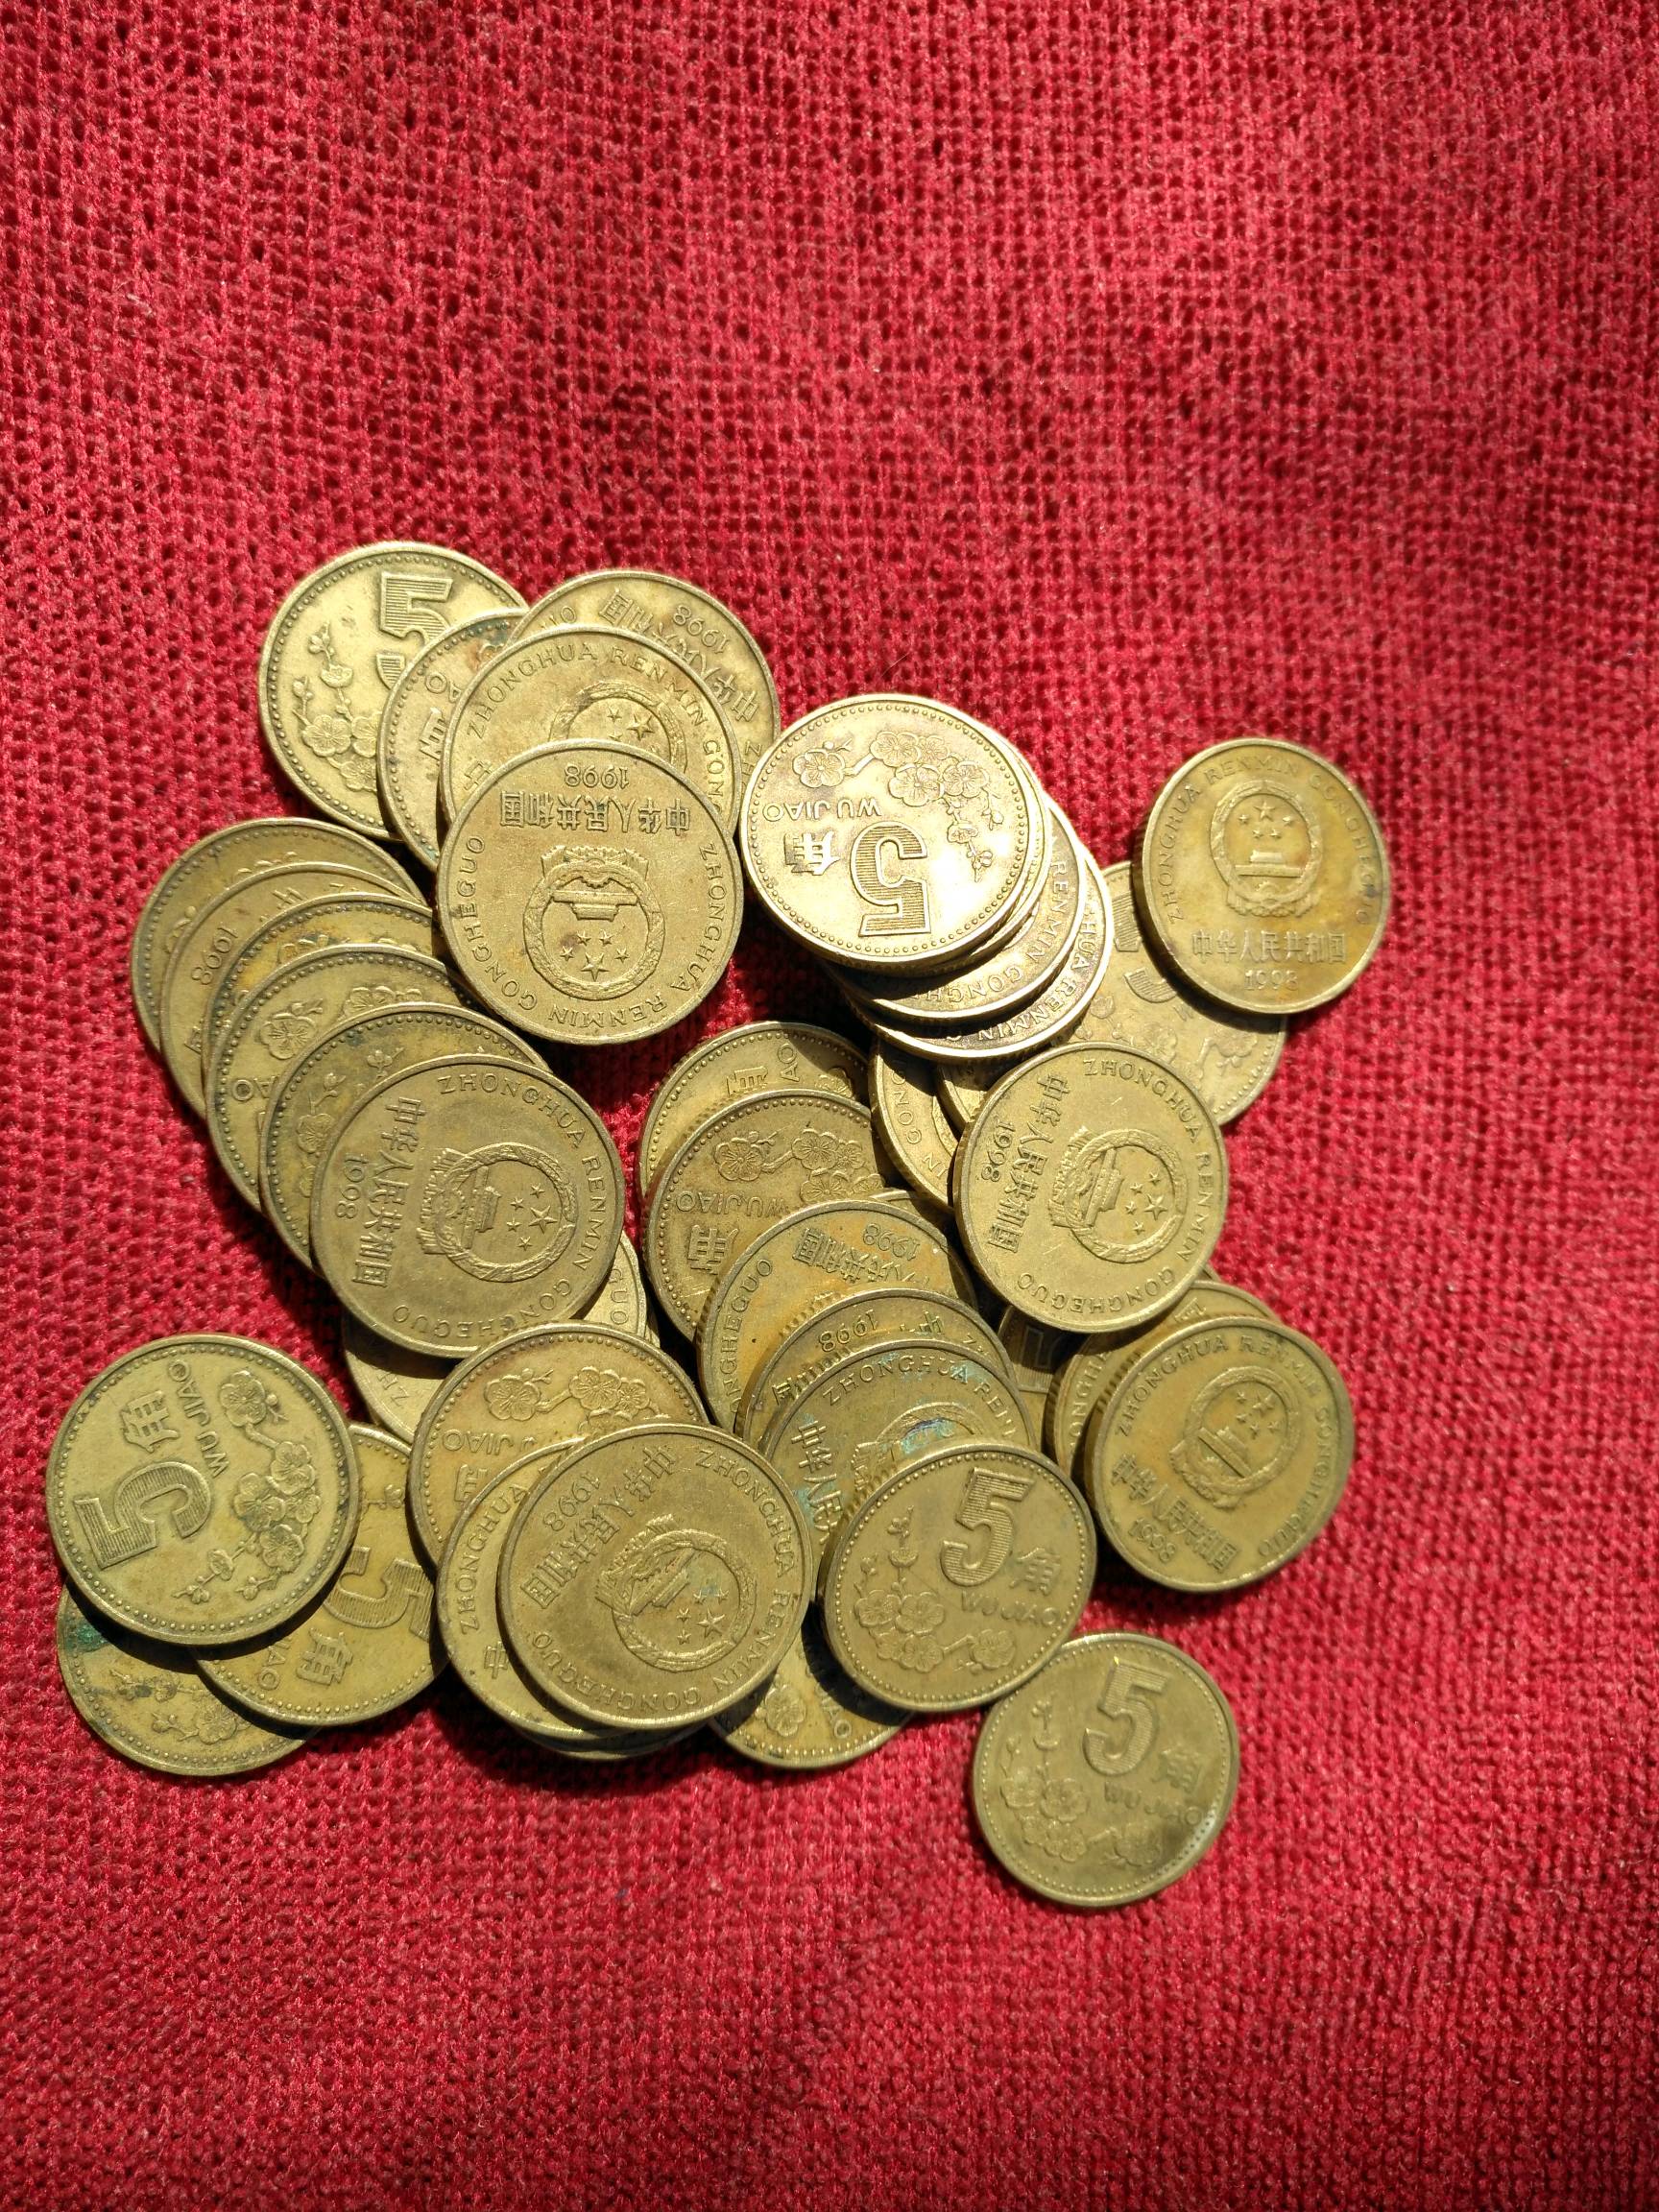 第四套硬币,五角梅花91年1